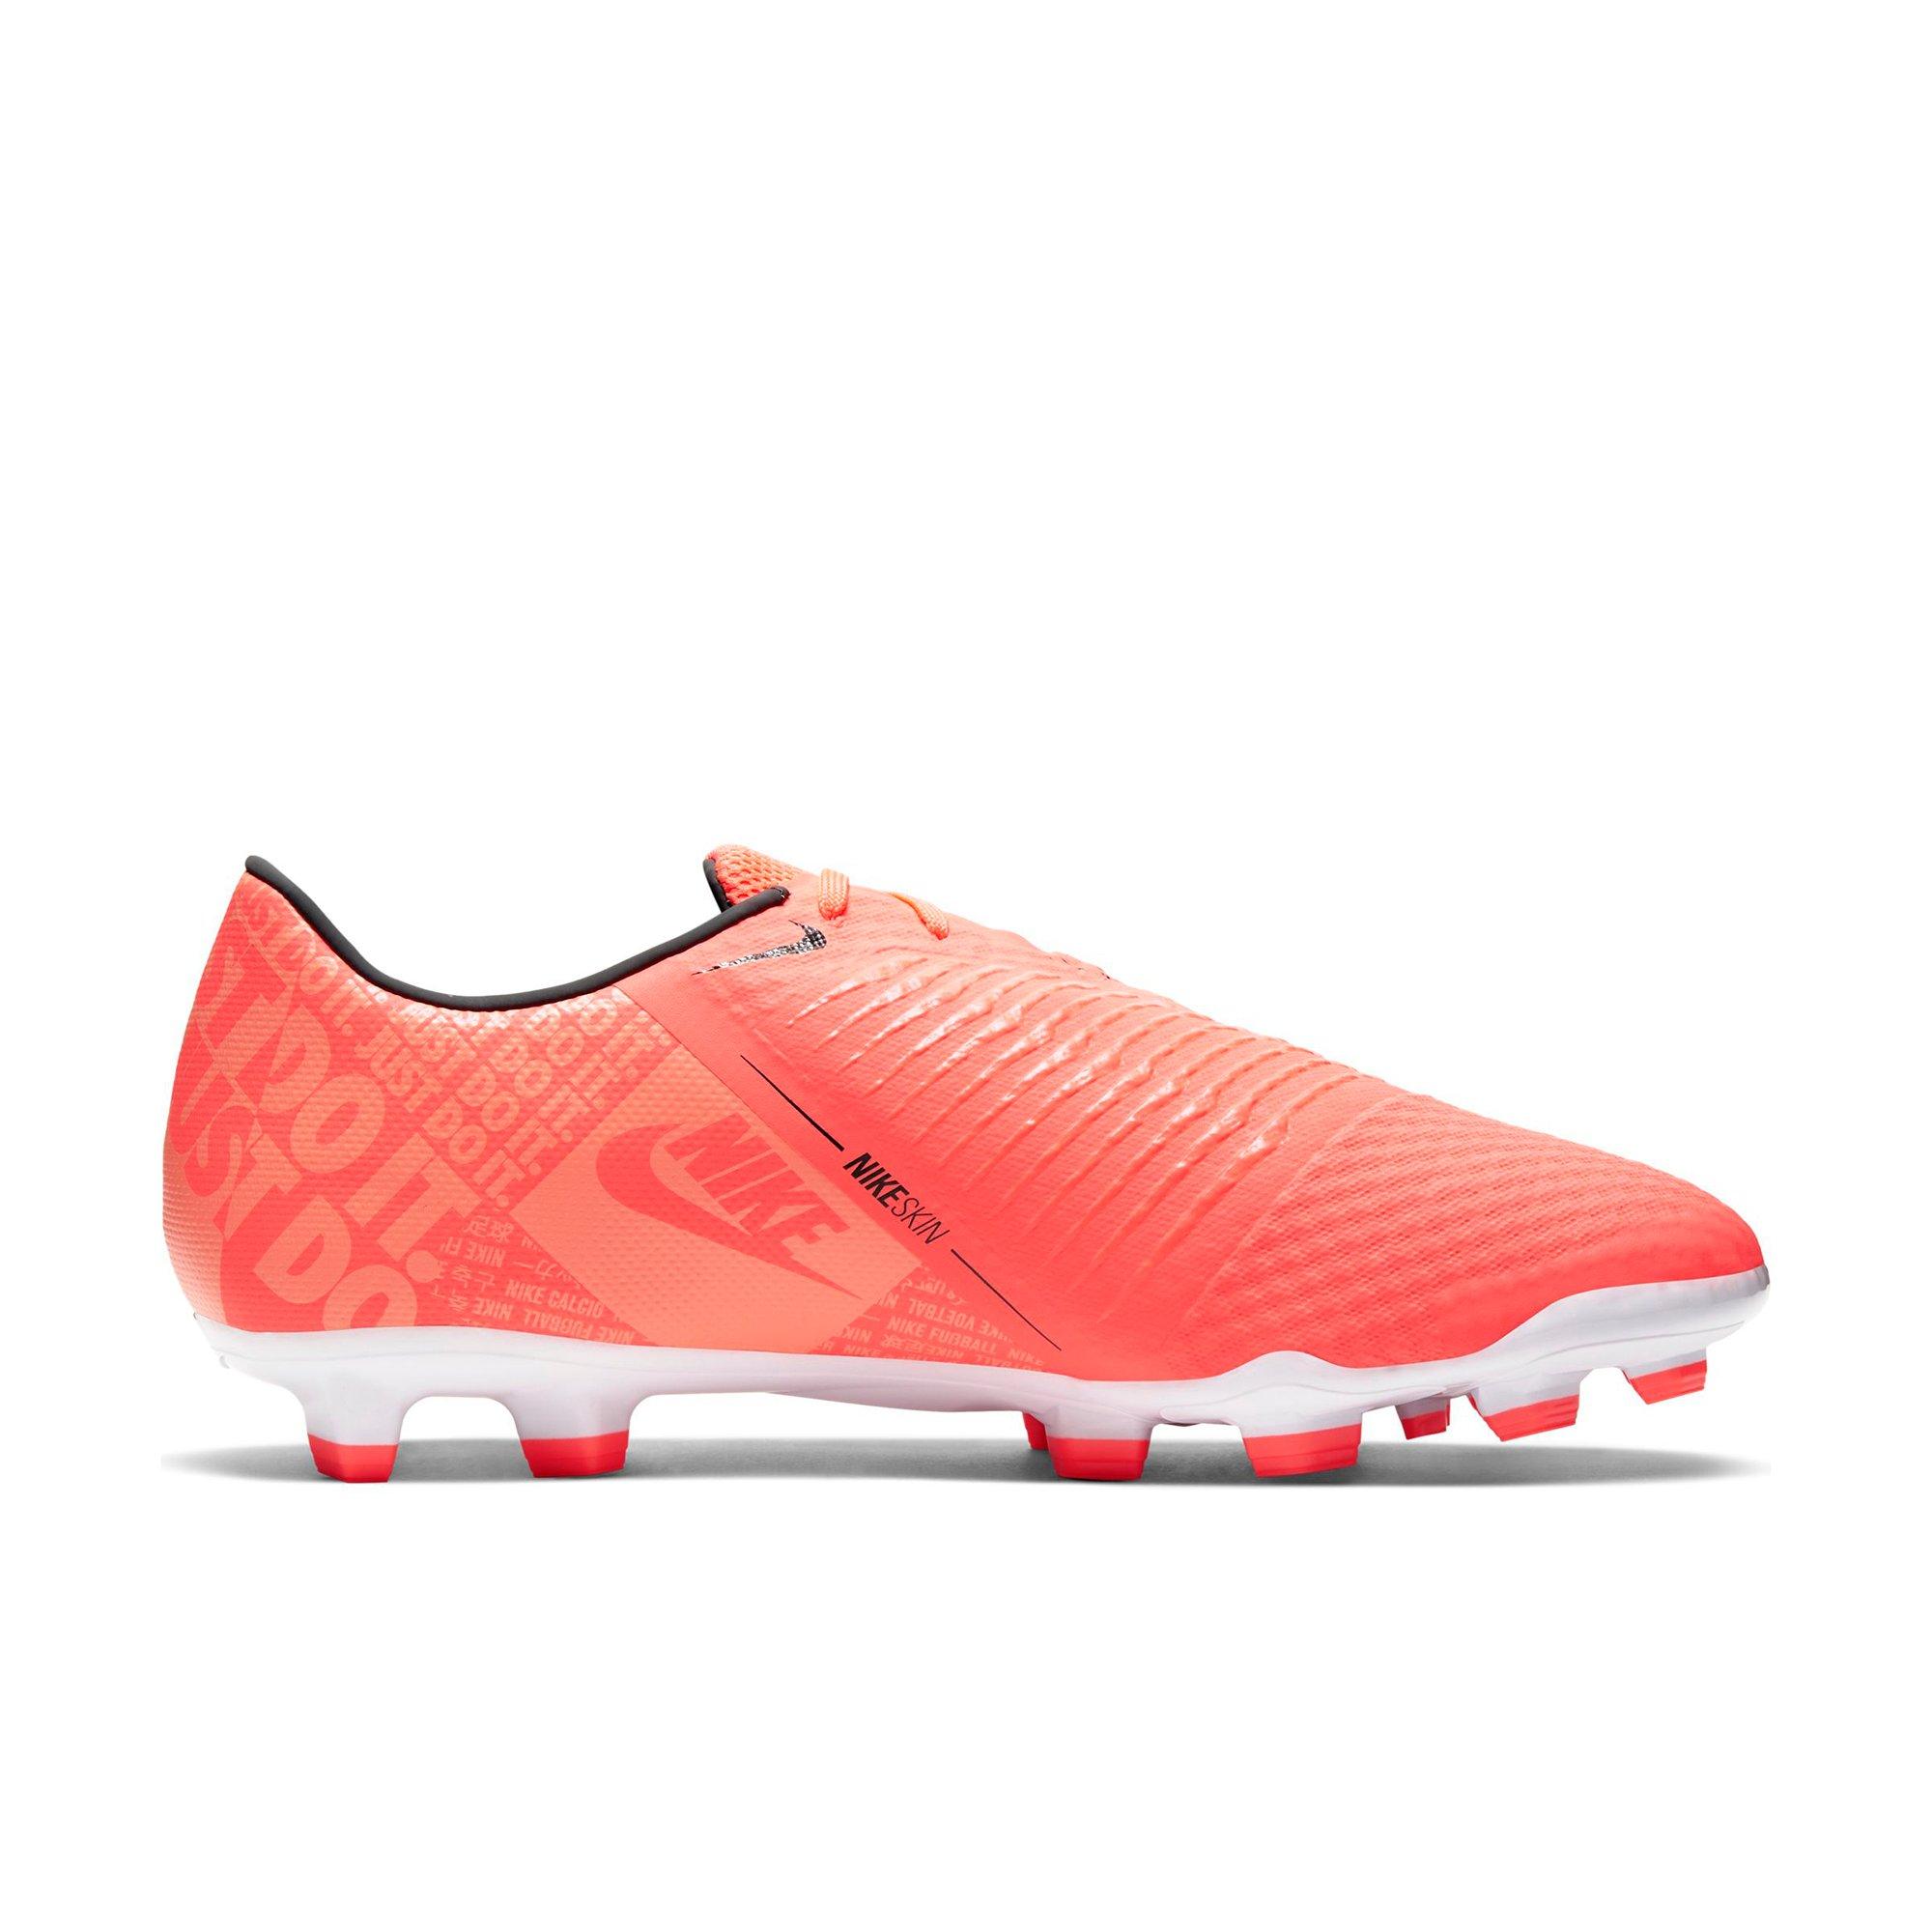 Nike Hypervenom Phantom II FG soccer shoes Soccer Cleats